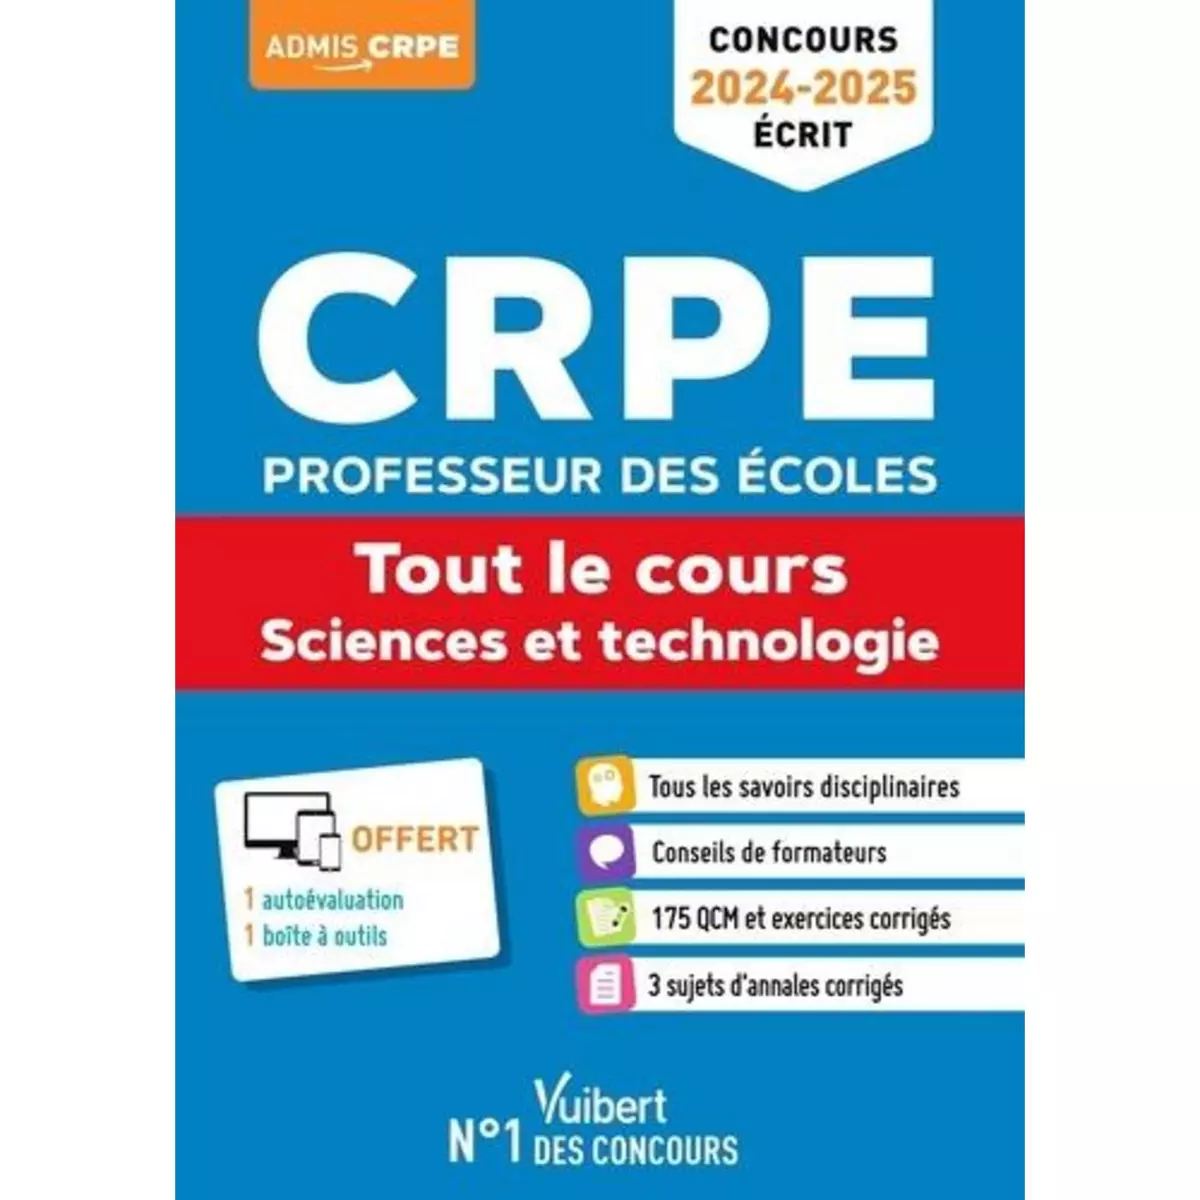  CRPE PROFESSEUR DES ECOLES. TOUT LE COURS - SCIENCES ET TECHNOLOGIE, EDITION 2024-2025, Loison Marc